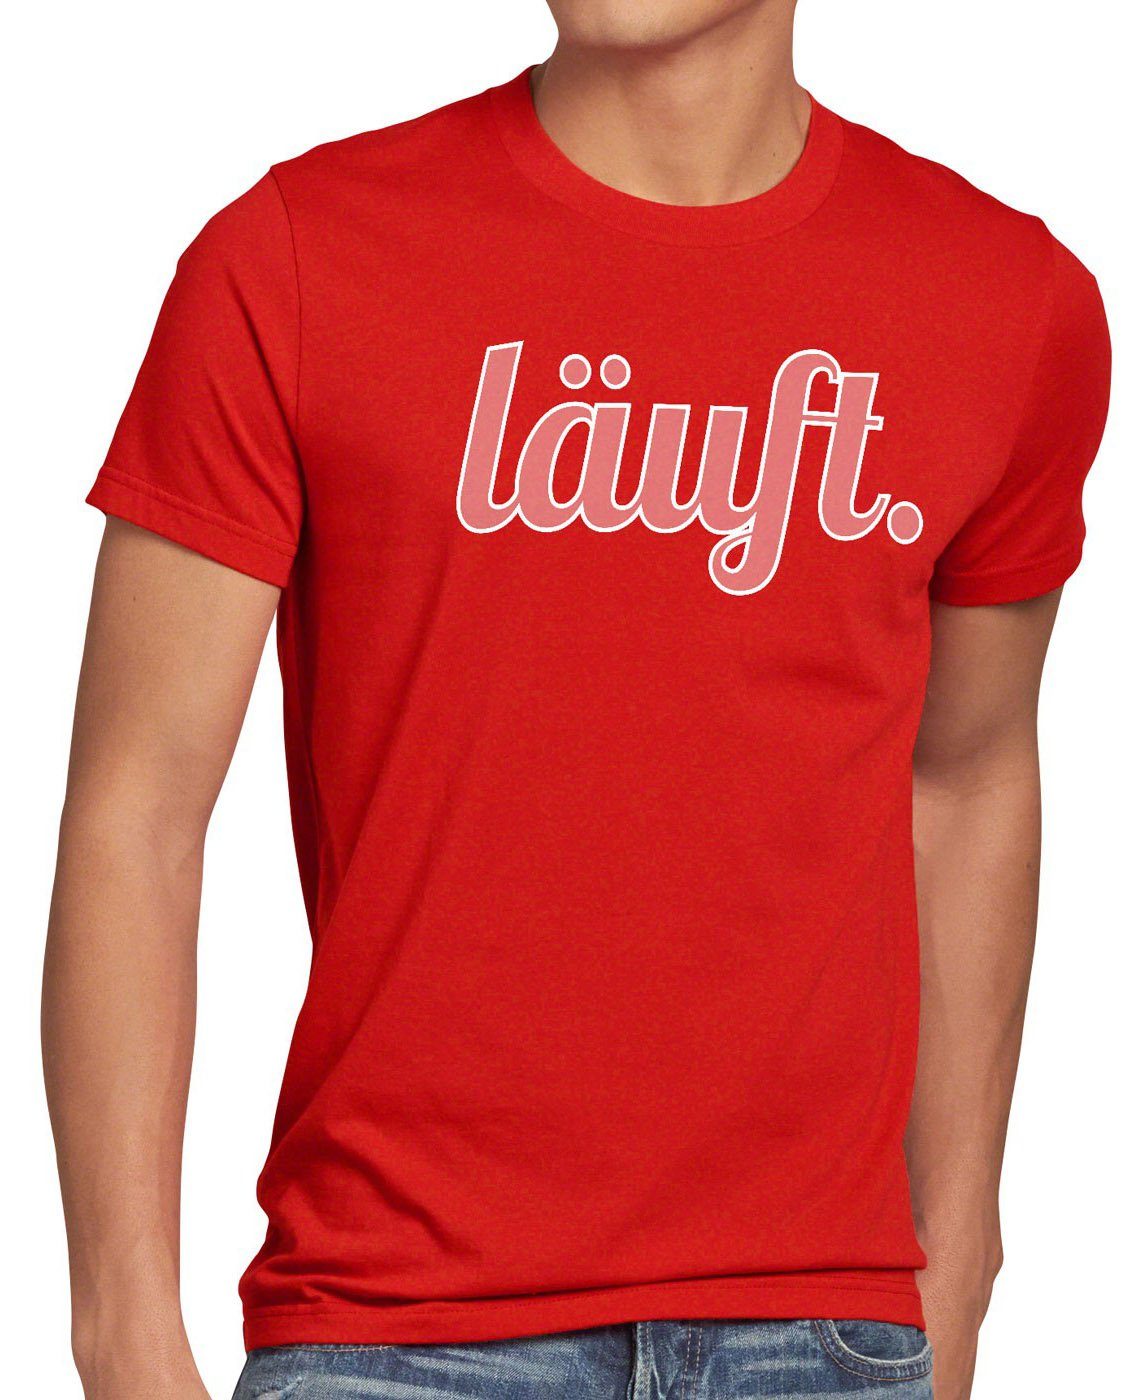 style3 Print-Shirt Herren T-Shirt läuft Funshirt Spruchshirt Shirt Fun bei dir meme kult mir top rot